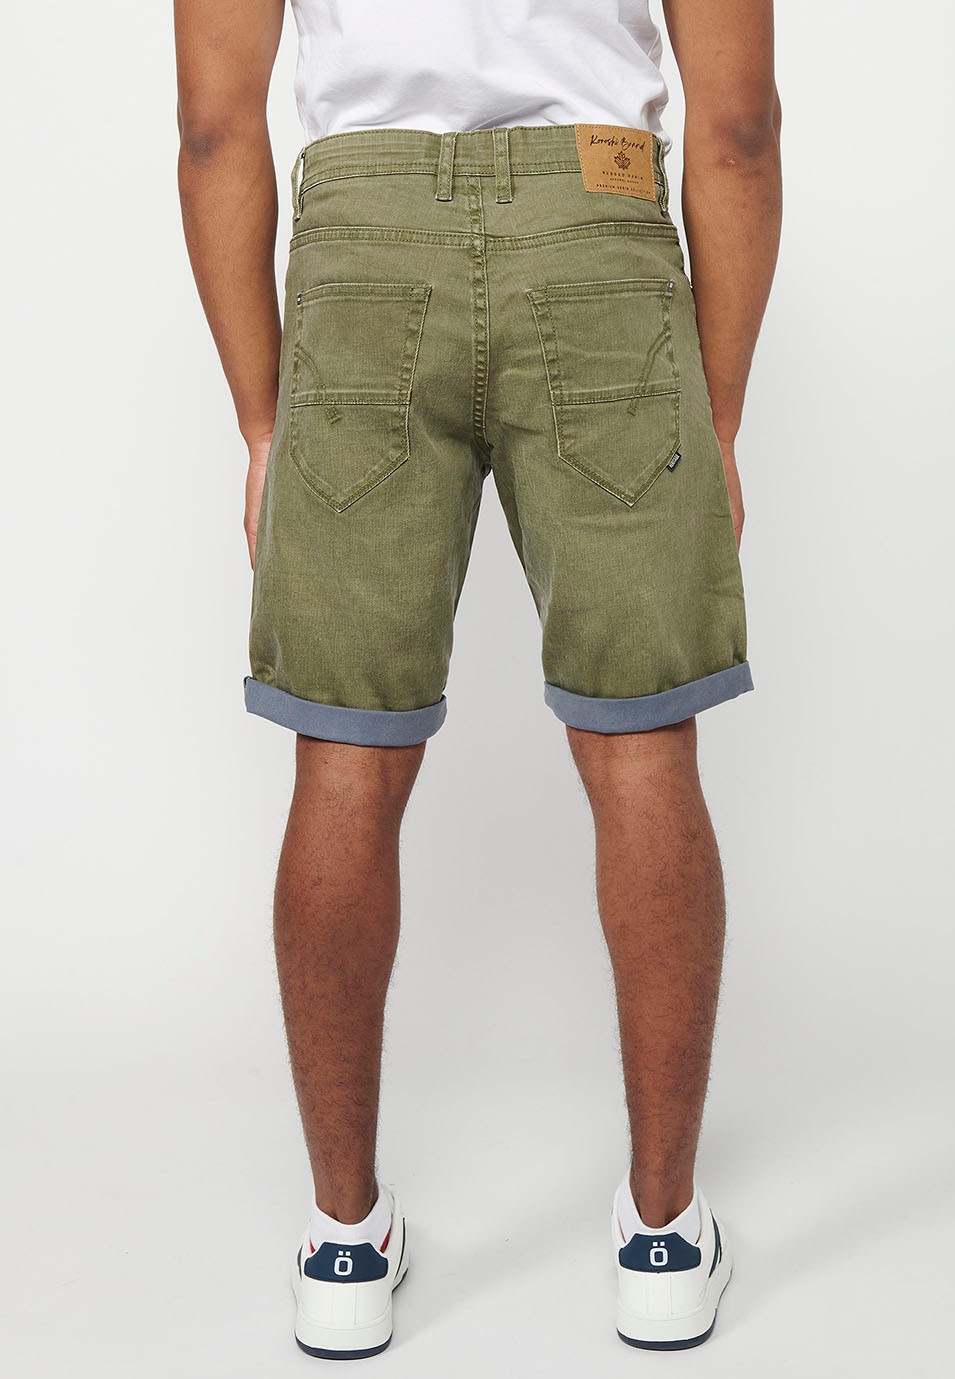 Jeans-Bermudashorts mit Umschlag, Frontverschluss mit Reißverschluss und Knopf, fünf Taschen und einer Tasche, Farbe Oliv für Herren 2